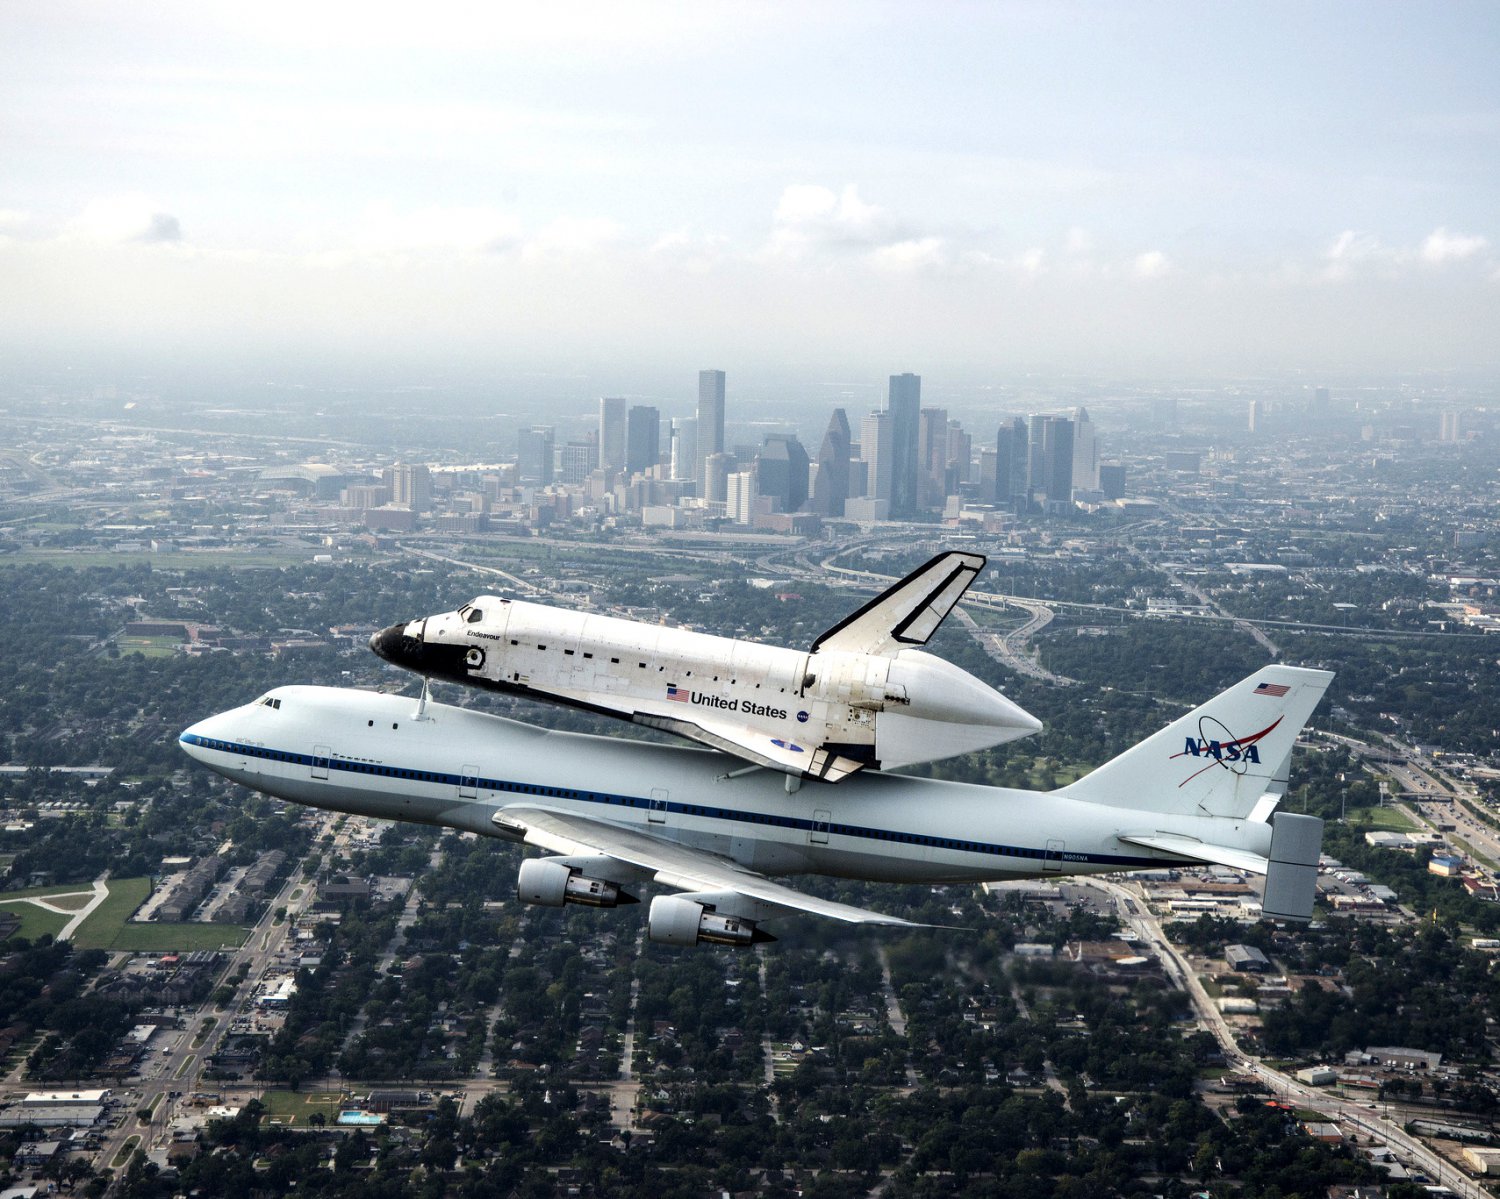 space shuttle endeavor photos